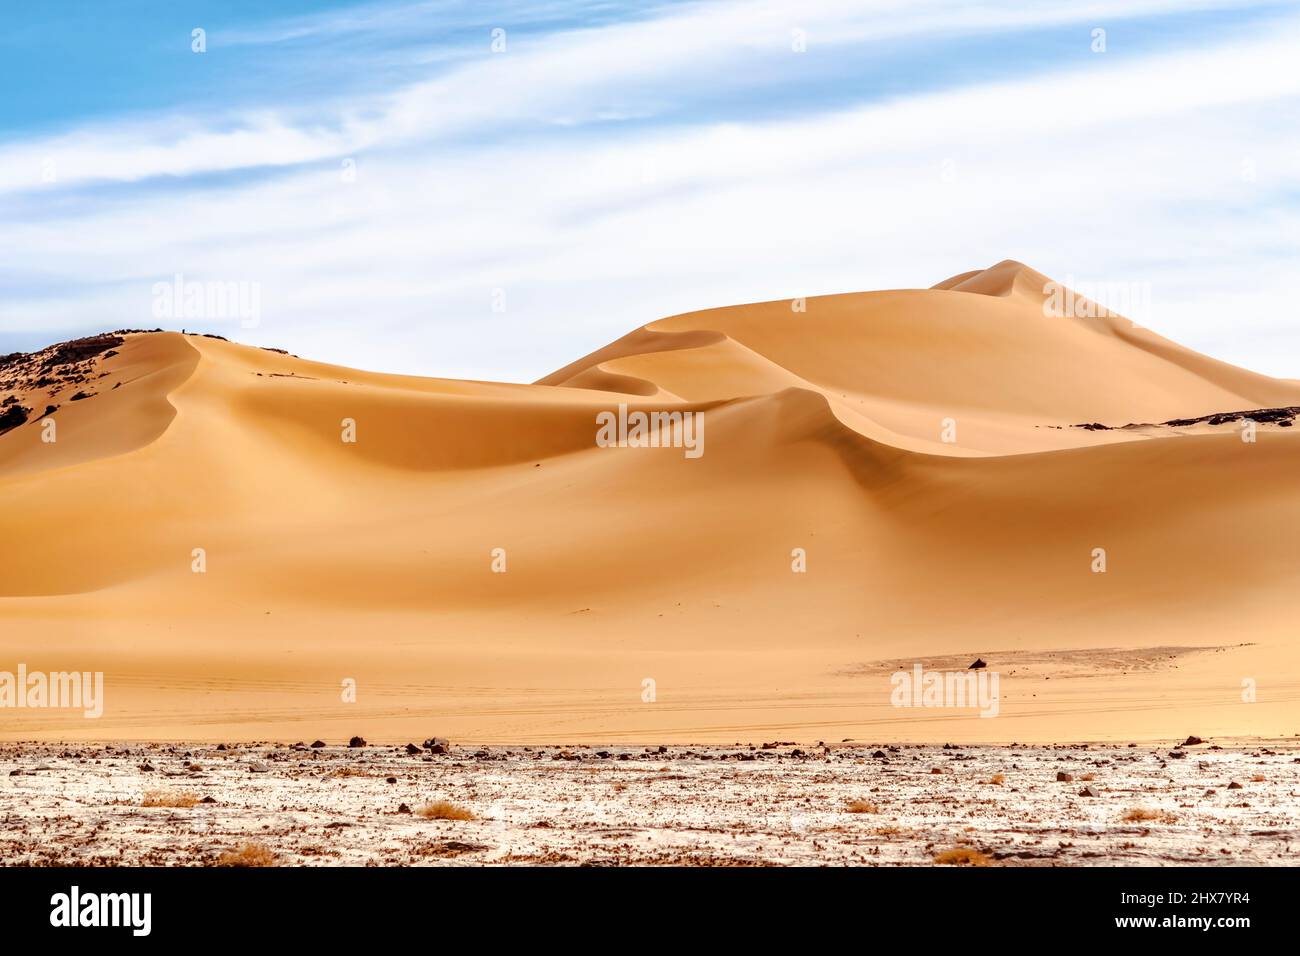 Vista ad angolo basso della duna di sabbia curvilinea nel deserto del Sahara. Superficie colorata, terreno bianco reg, duna ondulata di colore dorato, cielo nuvoloso blu. Foto Stock